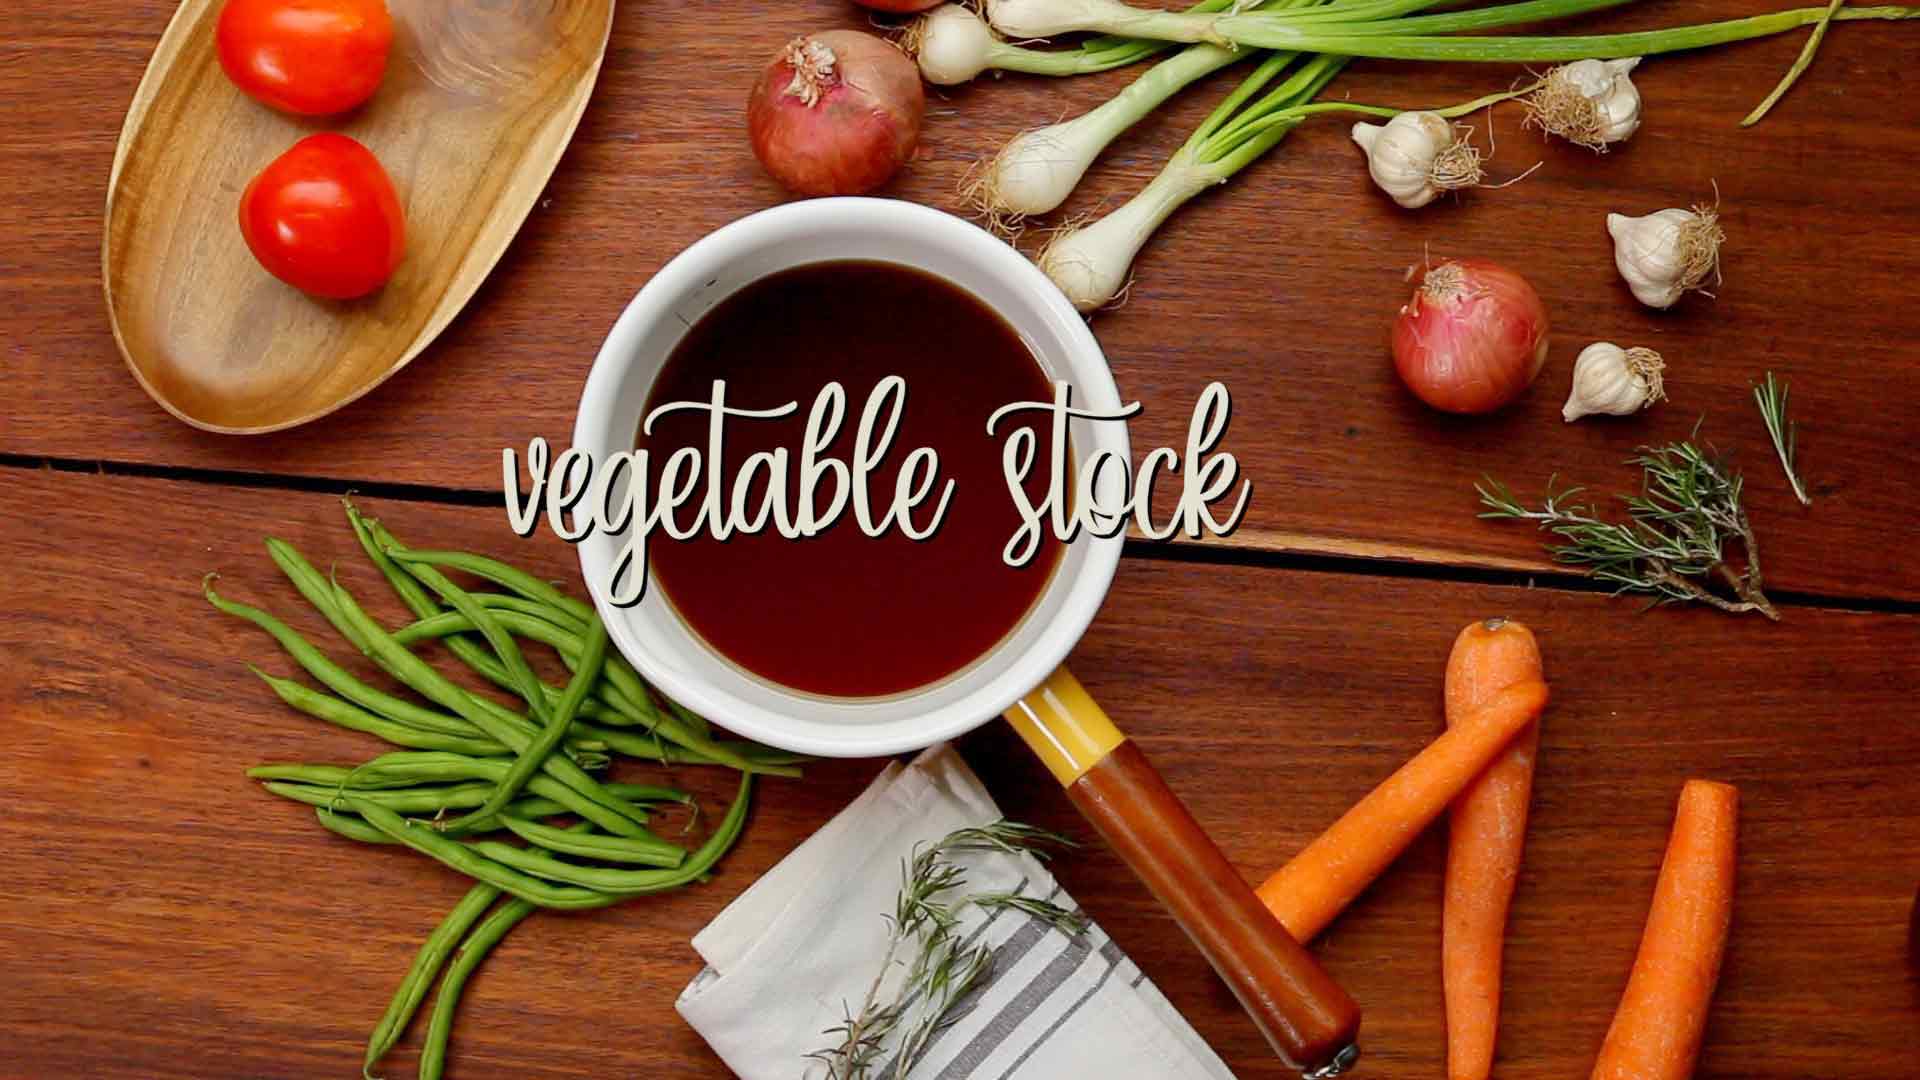 Vegetable Stock Recipe | How to make the best Homemade Veg Stock